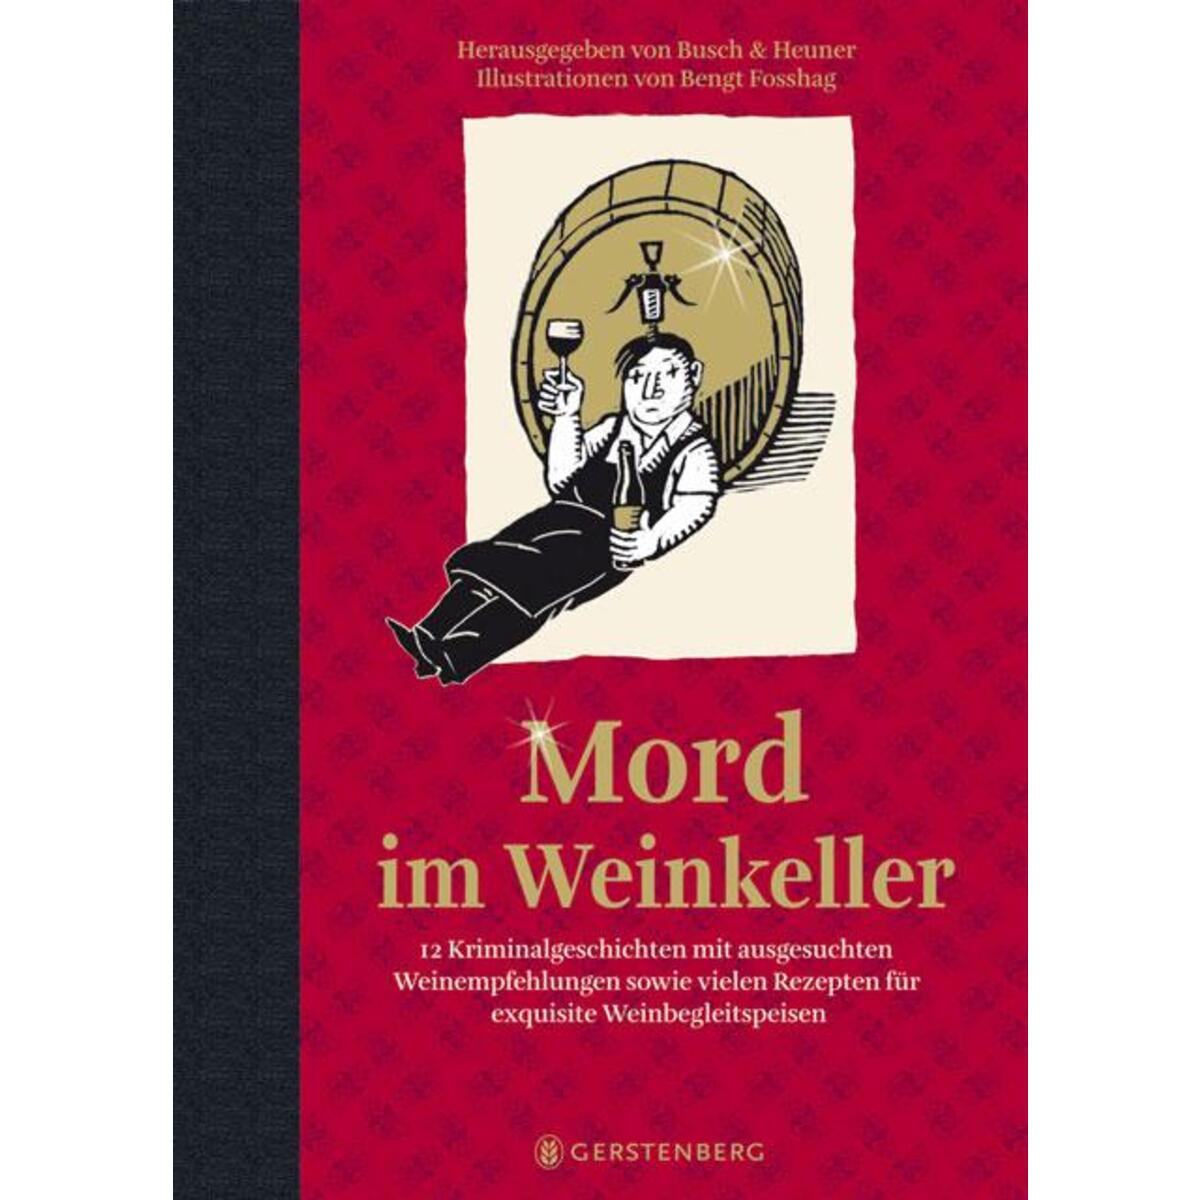 Mord im Weinkeller von Gerstenberg Verlag